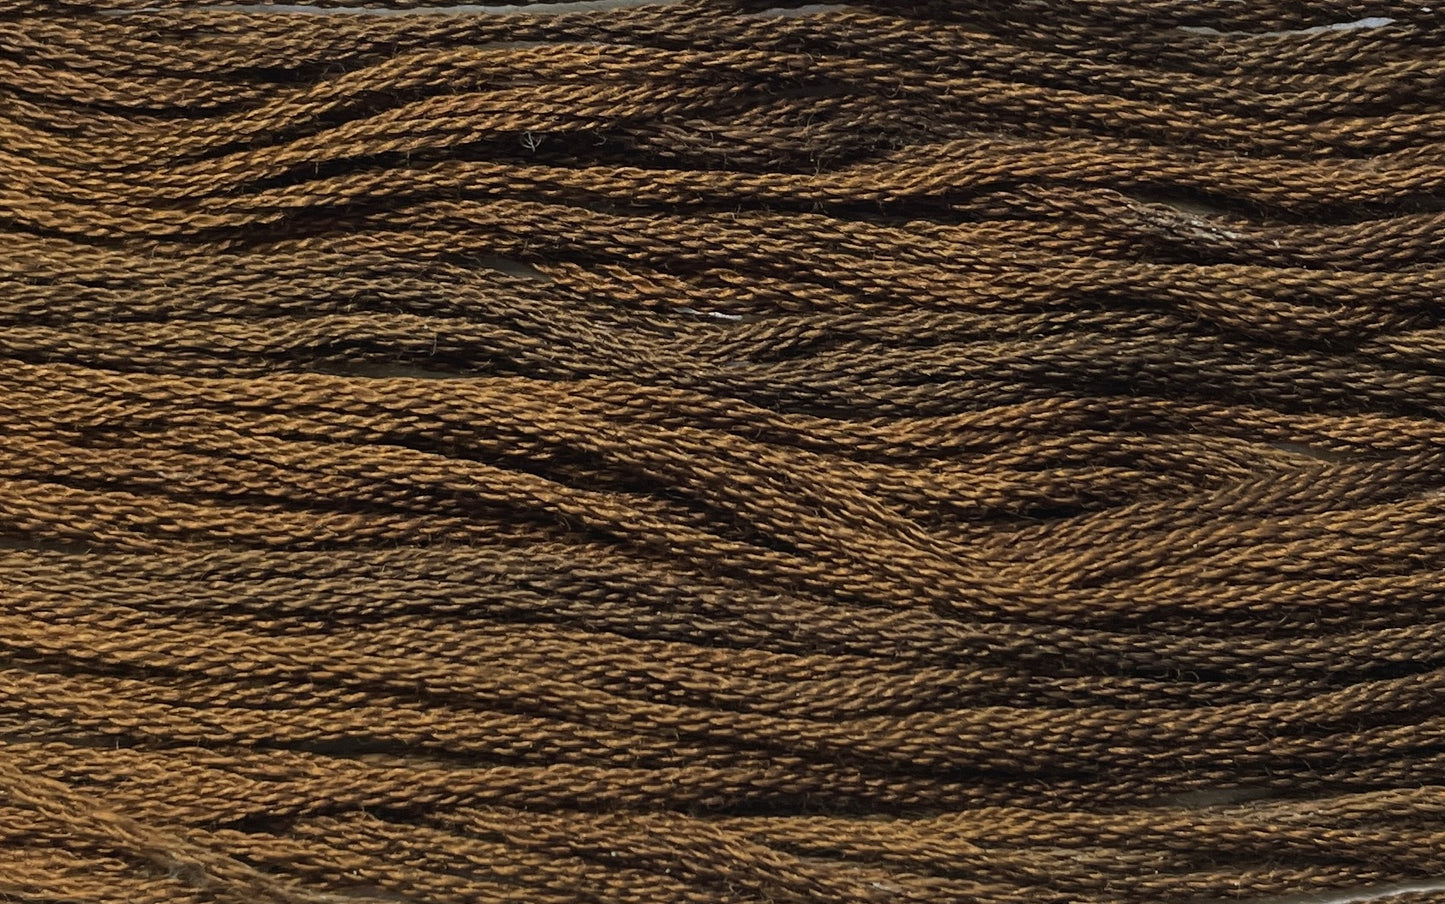 Dark Chocolate - Gentle Arts Cotton Thread - 5 yard Skein - Cross Stitch Floss, Thread & Floss, Thread & Floss, The Crafty Grimalkin - A Cross Stitch Store